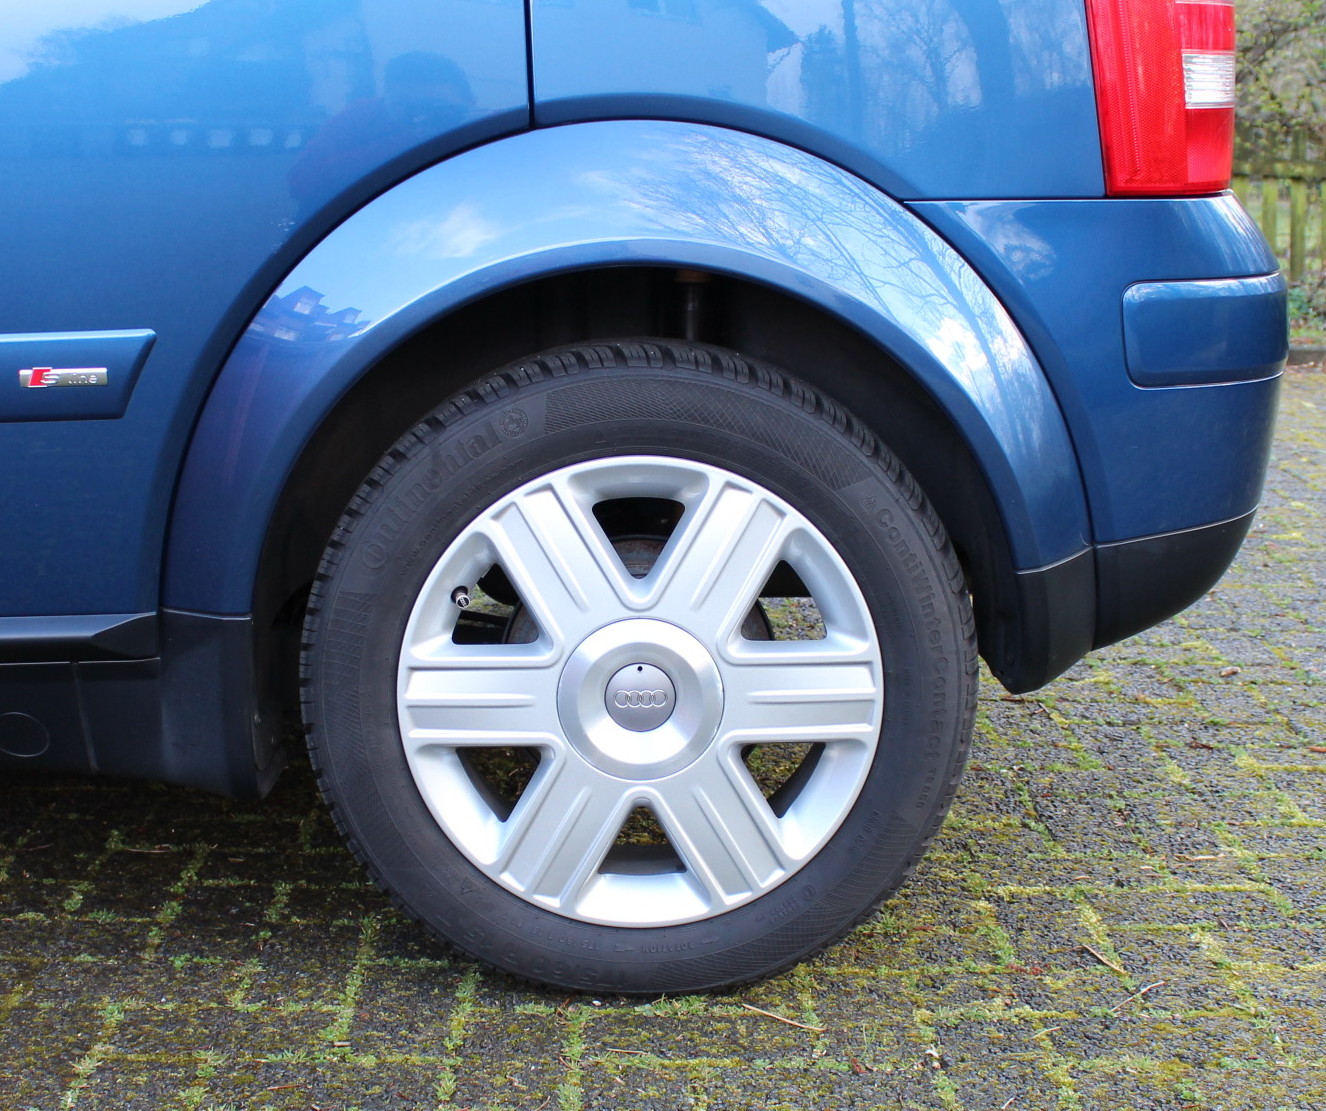 Brauche Hilfe beim Wechseln der Domlager - Seite 2 - Fahrwerk, Reifen und  Felgen - Audi A2 Club Deutschland